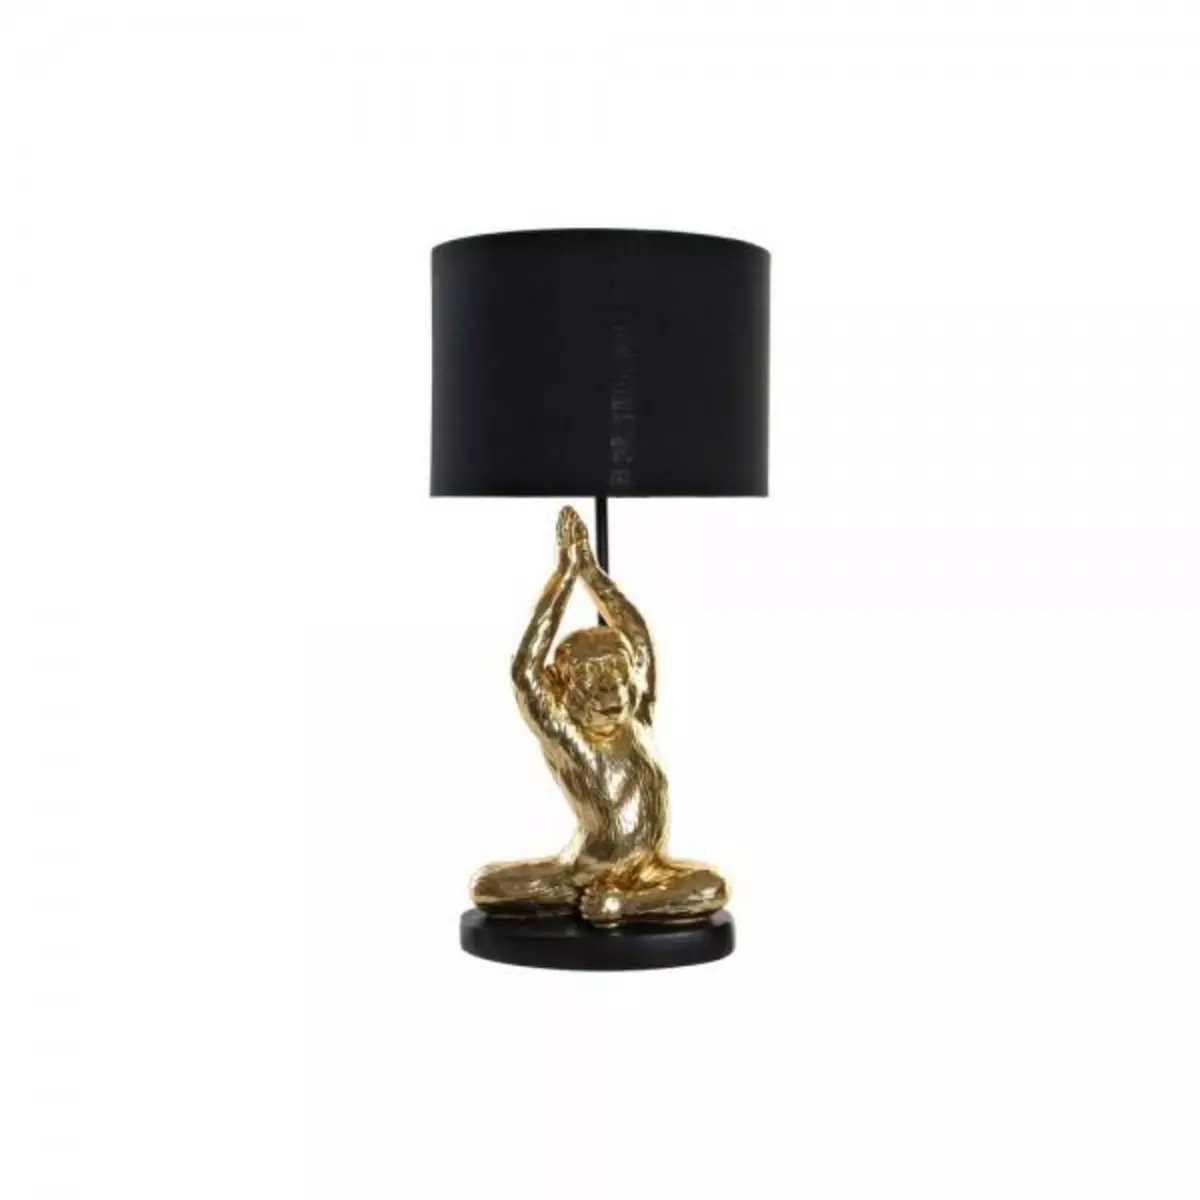 MARKET24 Lampe de bureau DKD Home Decor Noir Doré Polyester Résine Singe (25 x 25 x 48 cm)